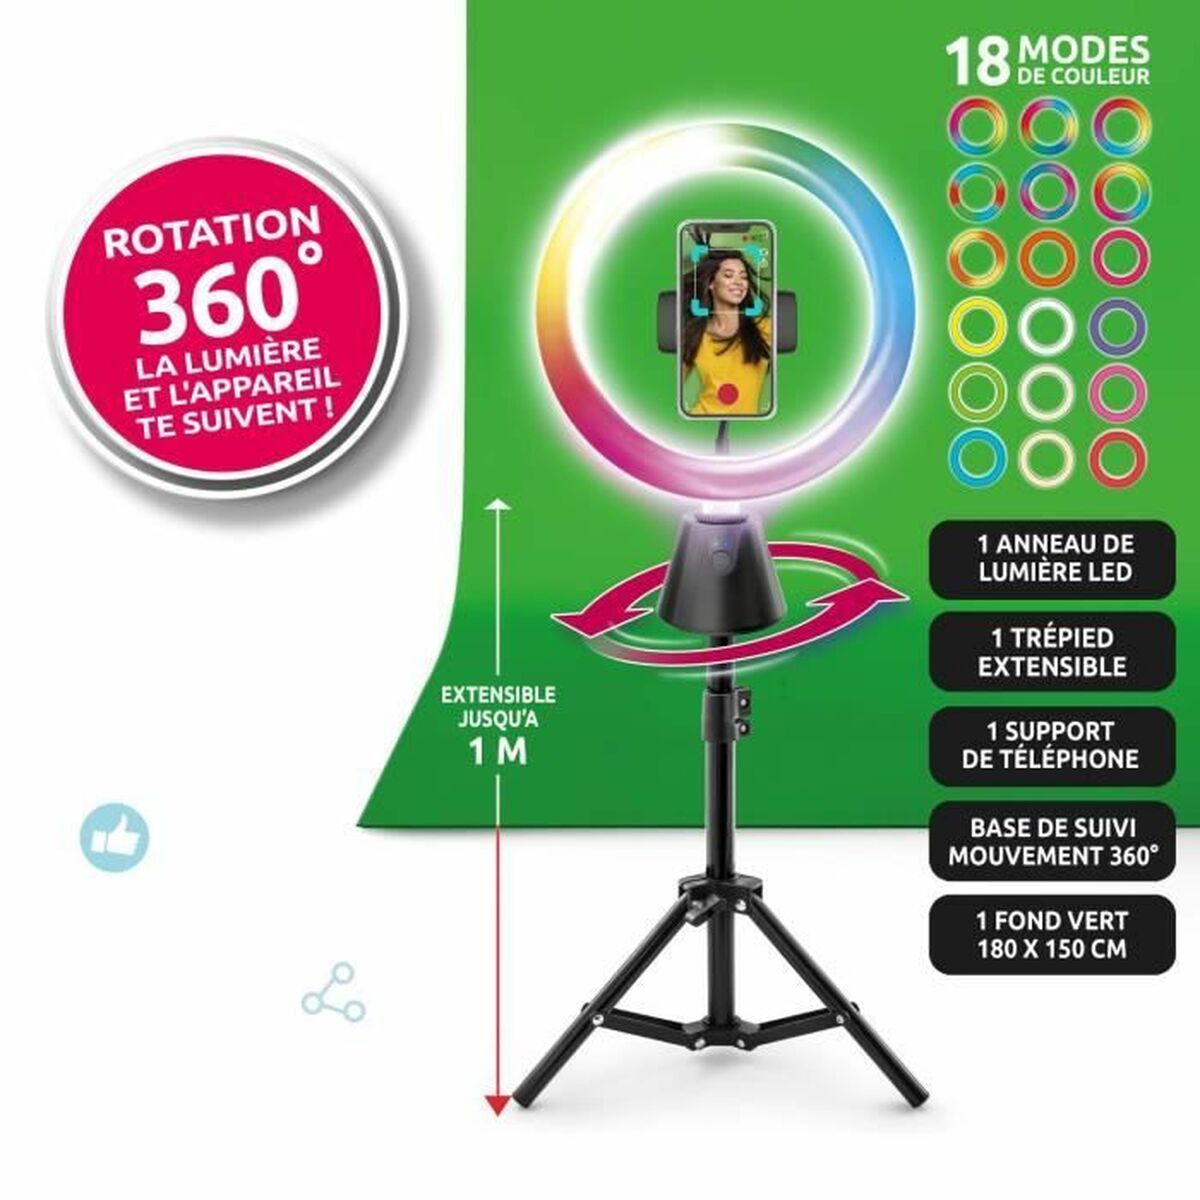 кольцевой светильник для селфи Canal Toys Studio creator video maker KIT 360º